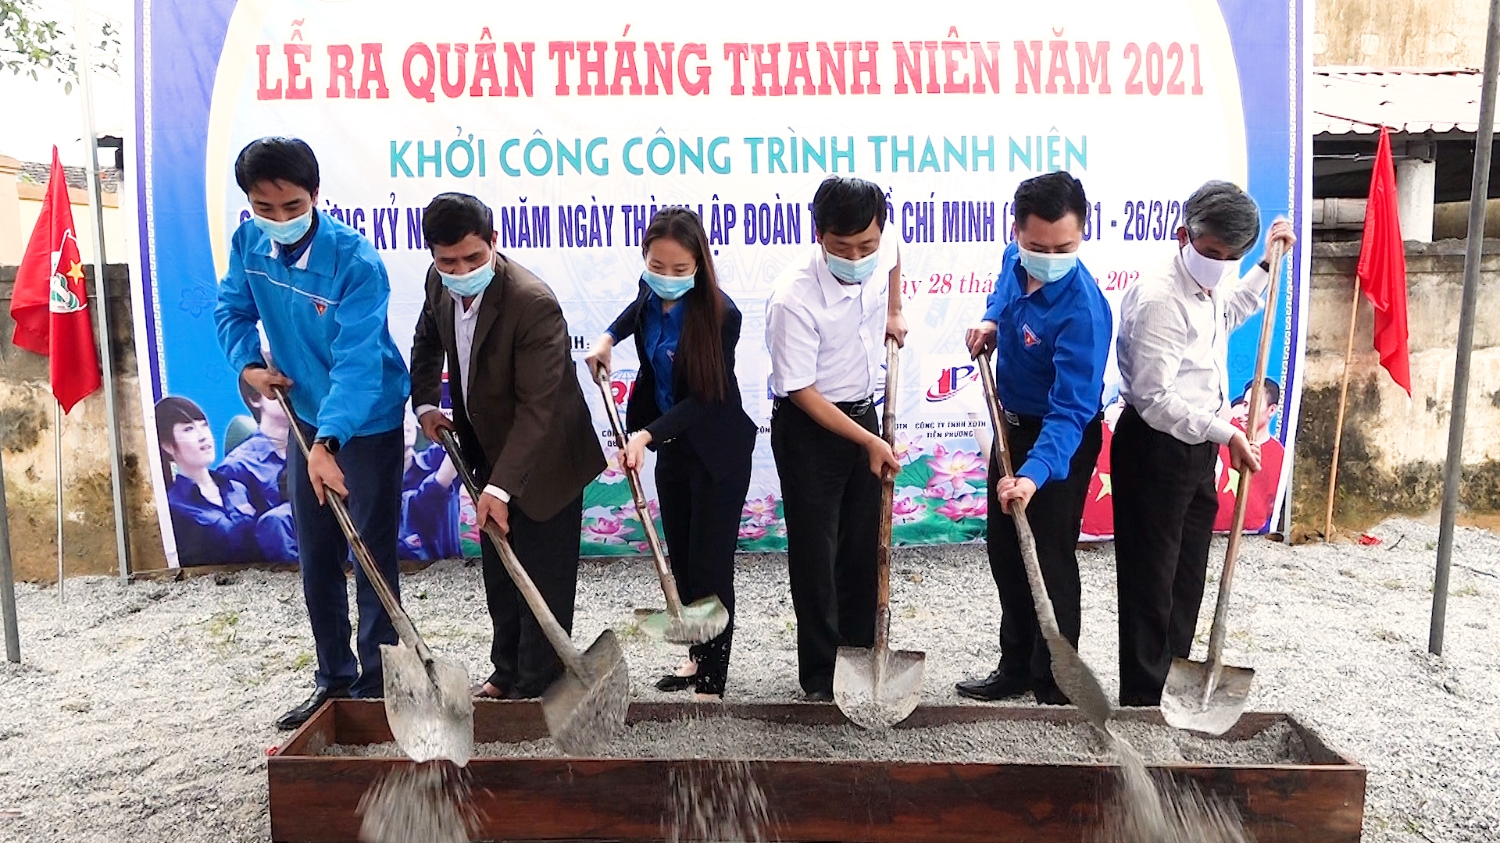 Khởi công công trình thanh niên xây dựng khuôn viên nghĩa trang Liệt sỹ xã Quảng Lộc.